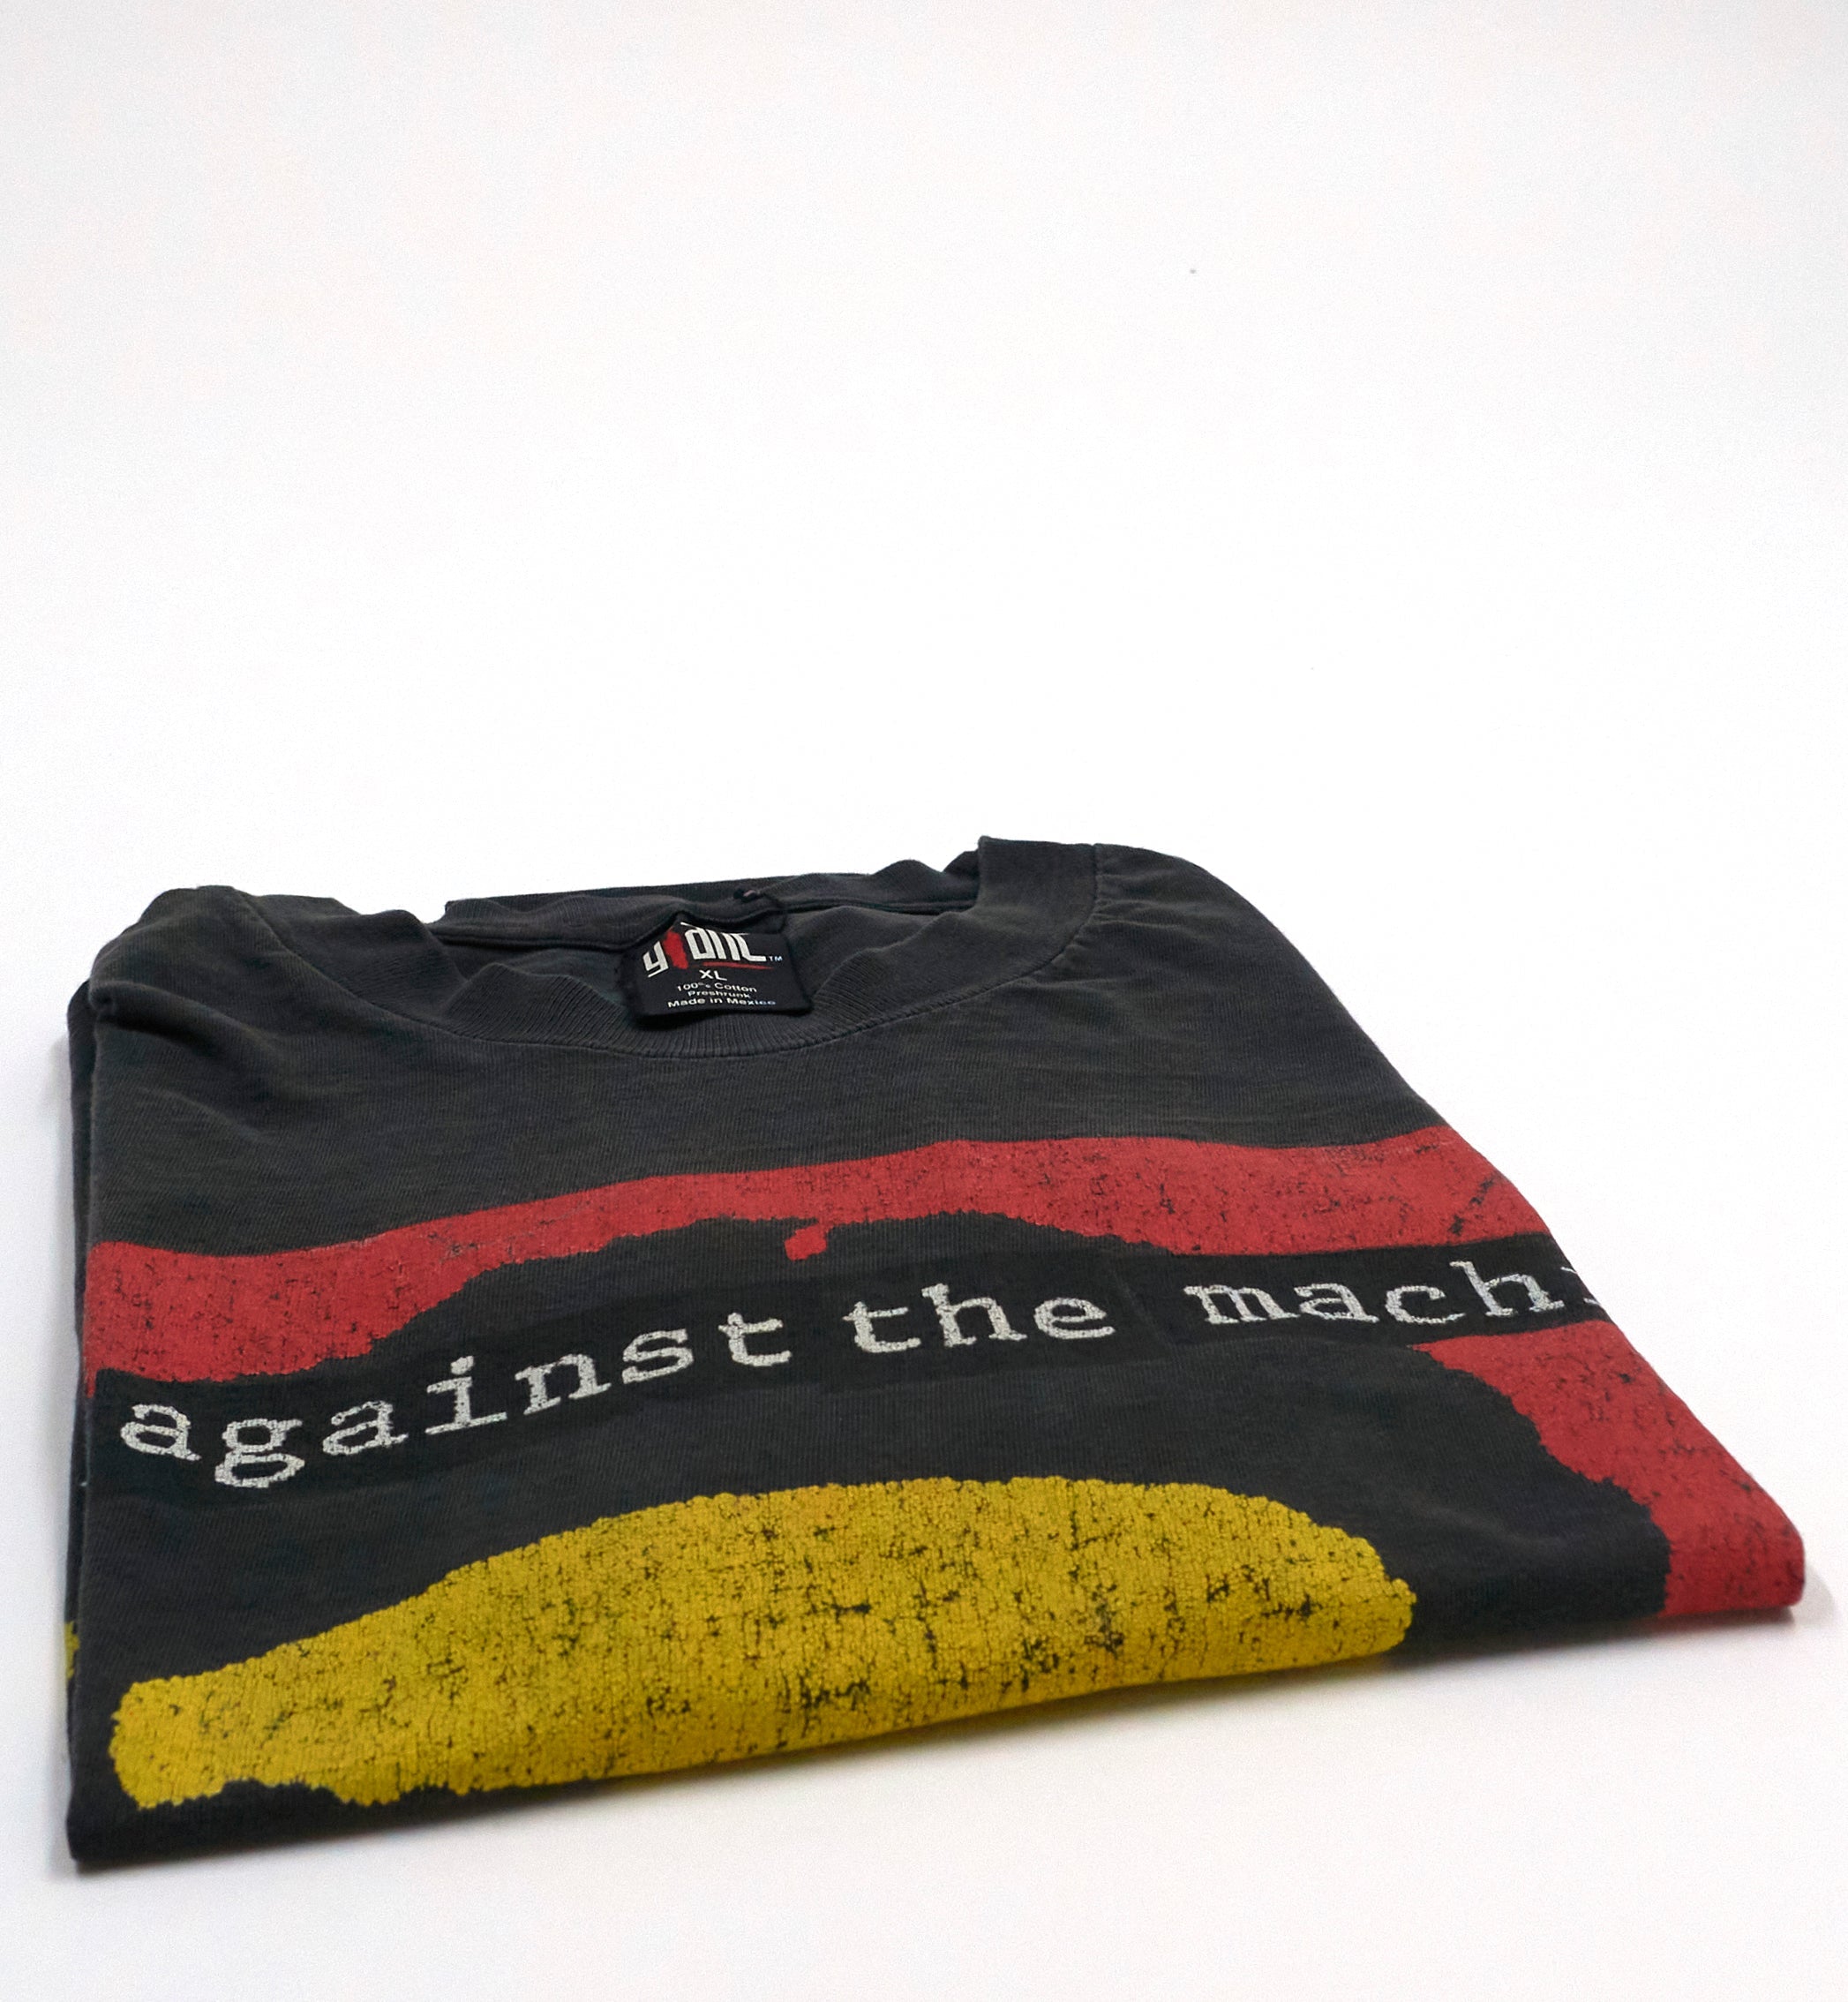 Rage Against The Machine - Bombtrack 1993 Tour Shirt Size XL